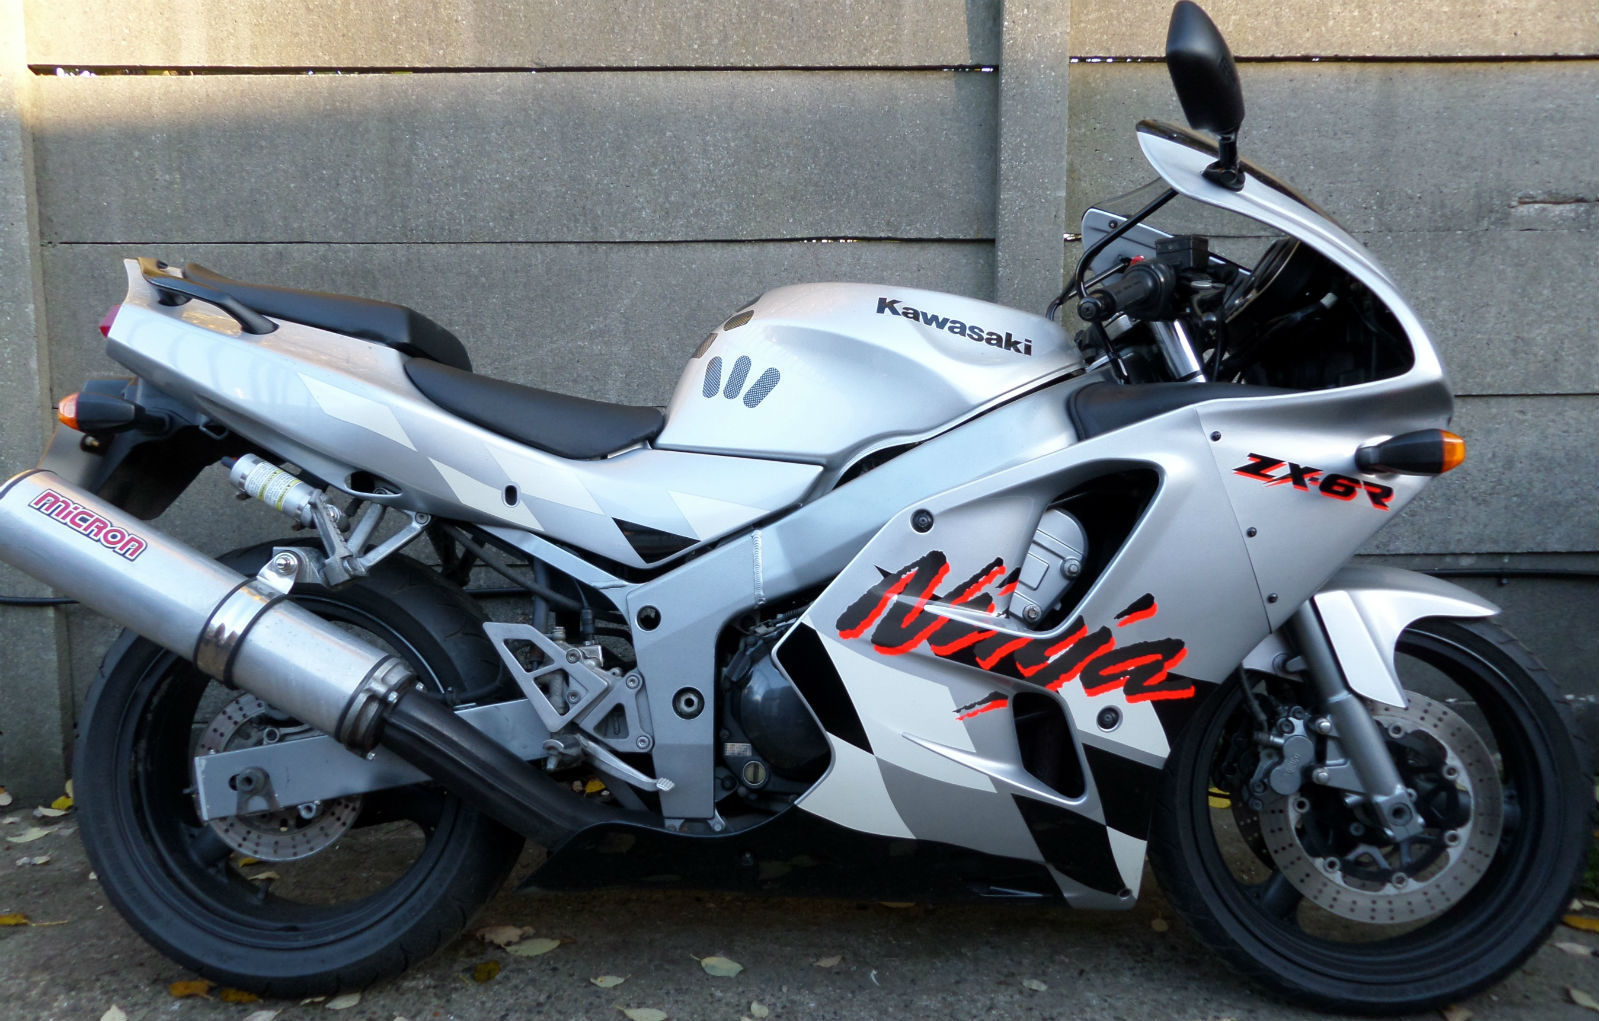 Kawasaki F3 Ninja Silver 600 cc Supersport